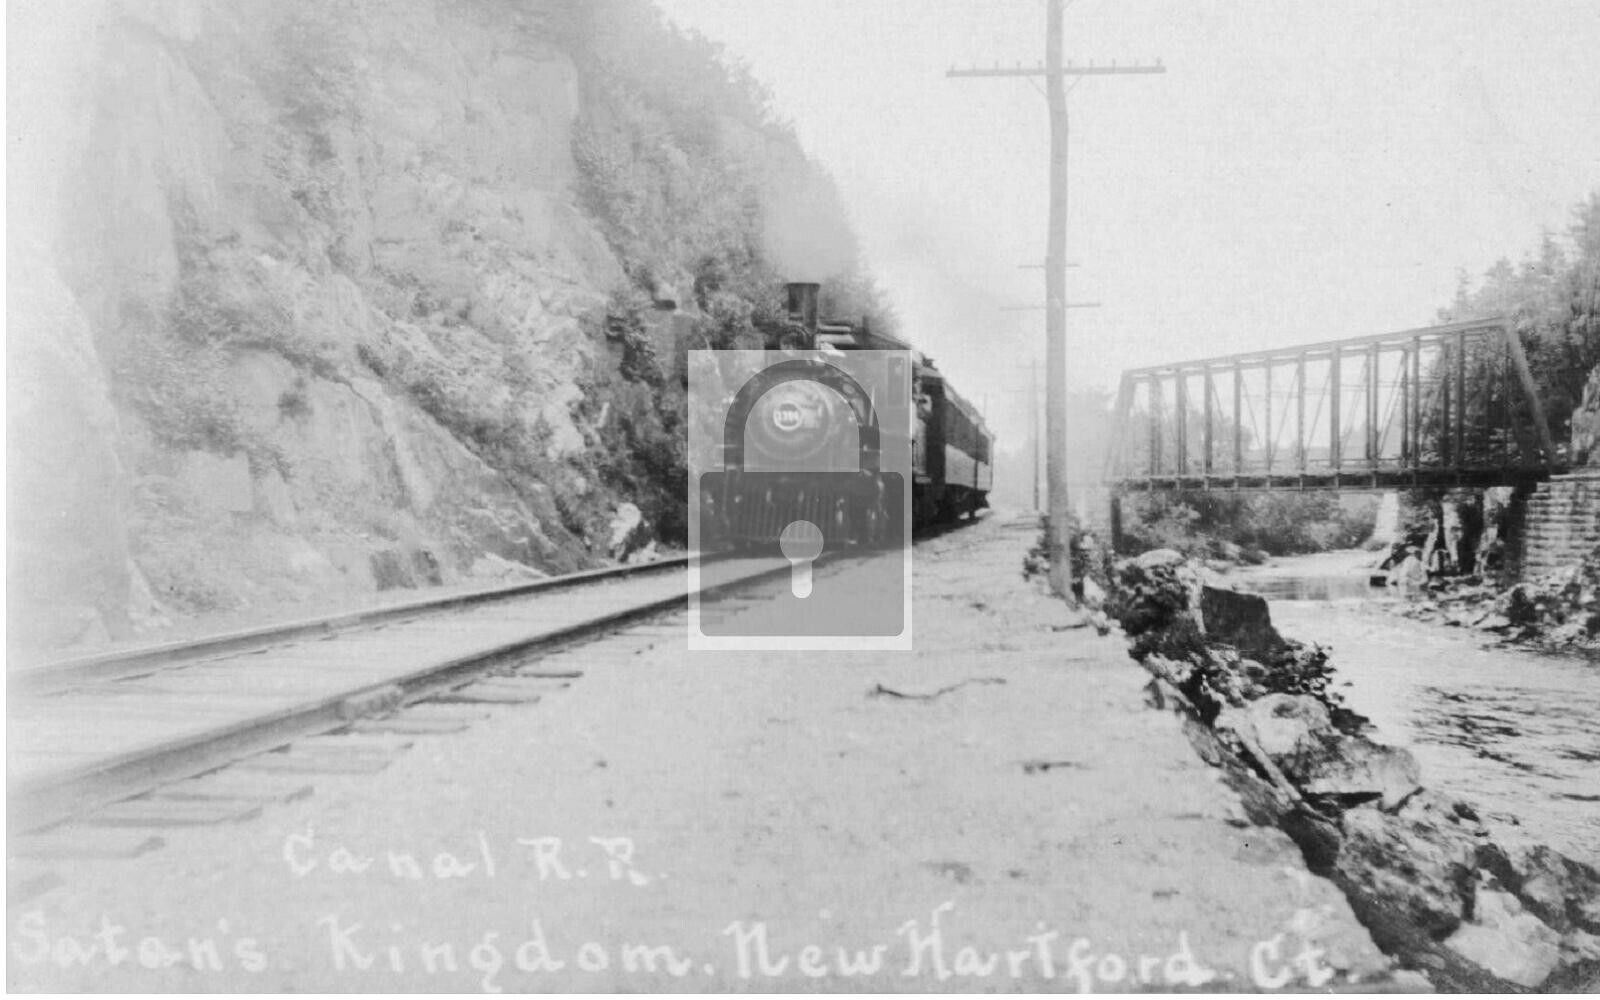 Canal Railroad Train Satans Kingdom New Hartford Connecticut CT Reprint Postcard